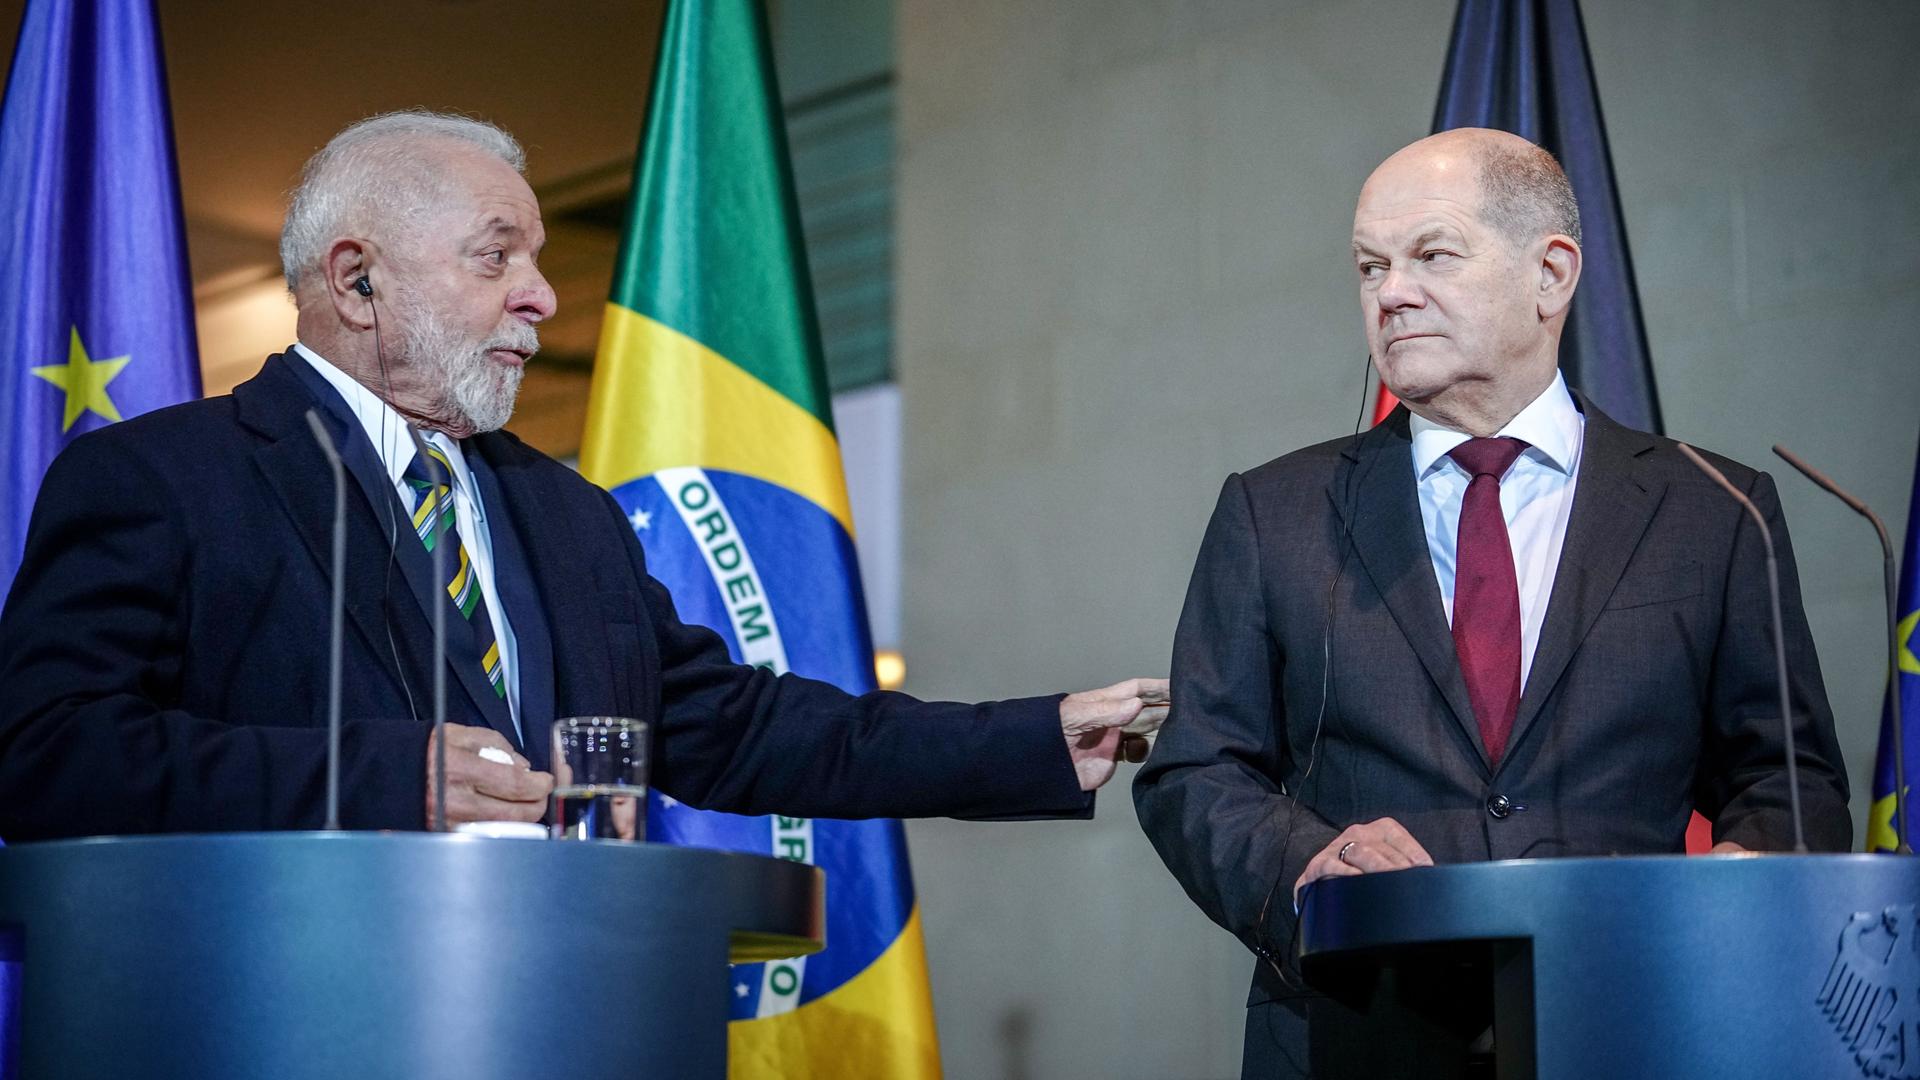 Bundeskanzler Olaf Scholz (r, SPD) und Luiz Inacio Lula da Silva, Präsident von Brasilien, geben anlässlich der 2. deutsch-brasilianischen Regierungskonsultationen in der deutschen Hauptstadt im Bundeskanzleramt eine Pressekonferenz.